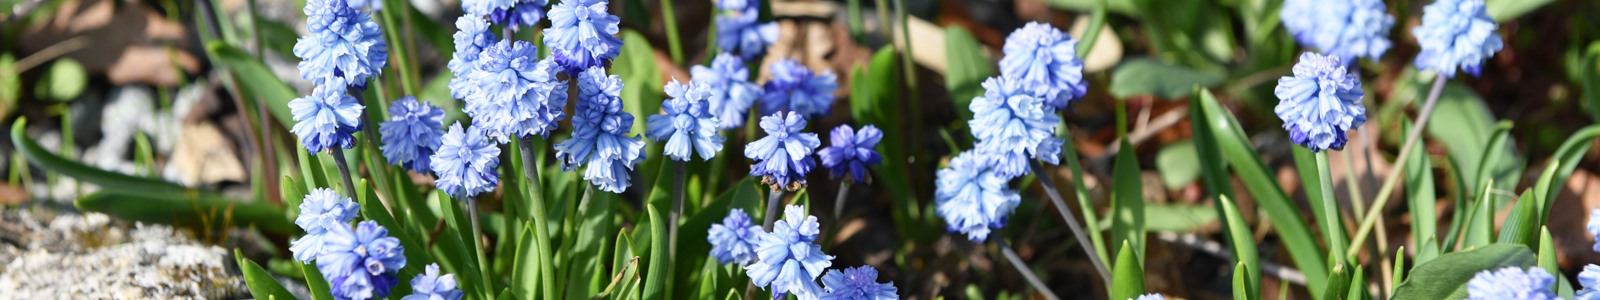 Blaublühende Blumen in Nahaufnahme @Dr. Köhler